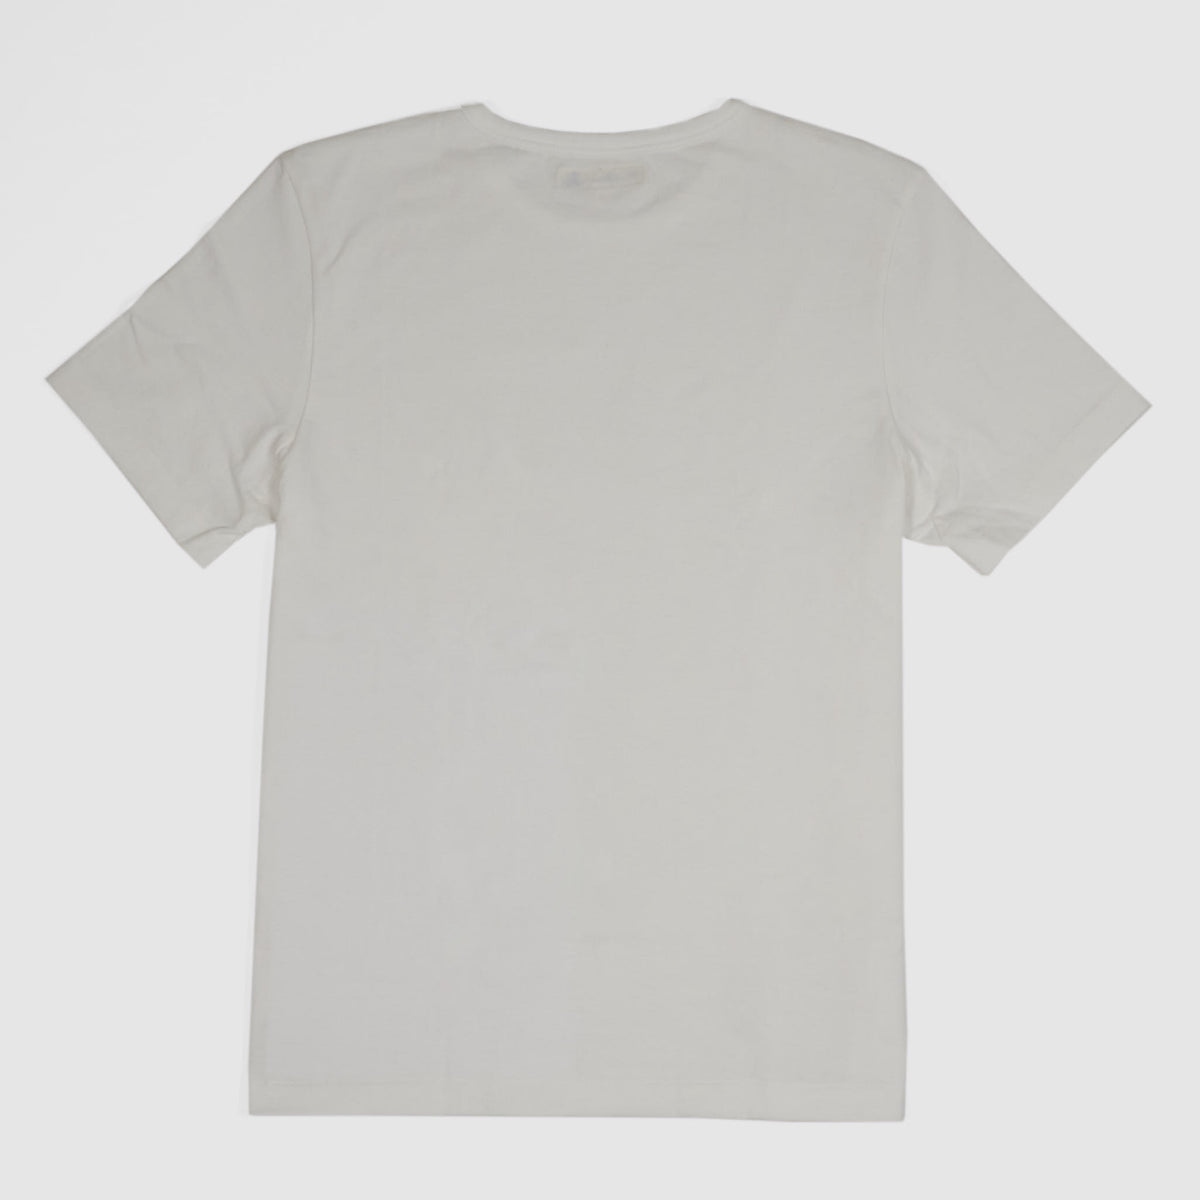 Merz b.Schwanen Soft Organic Cotton Loop Wheeler Short Sleeves T-Shirt